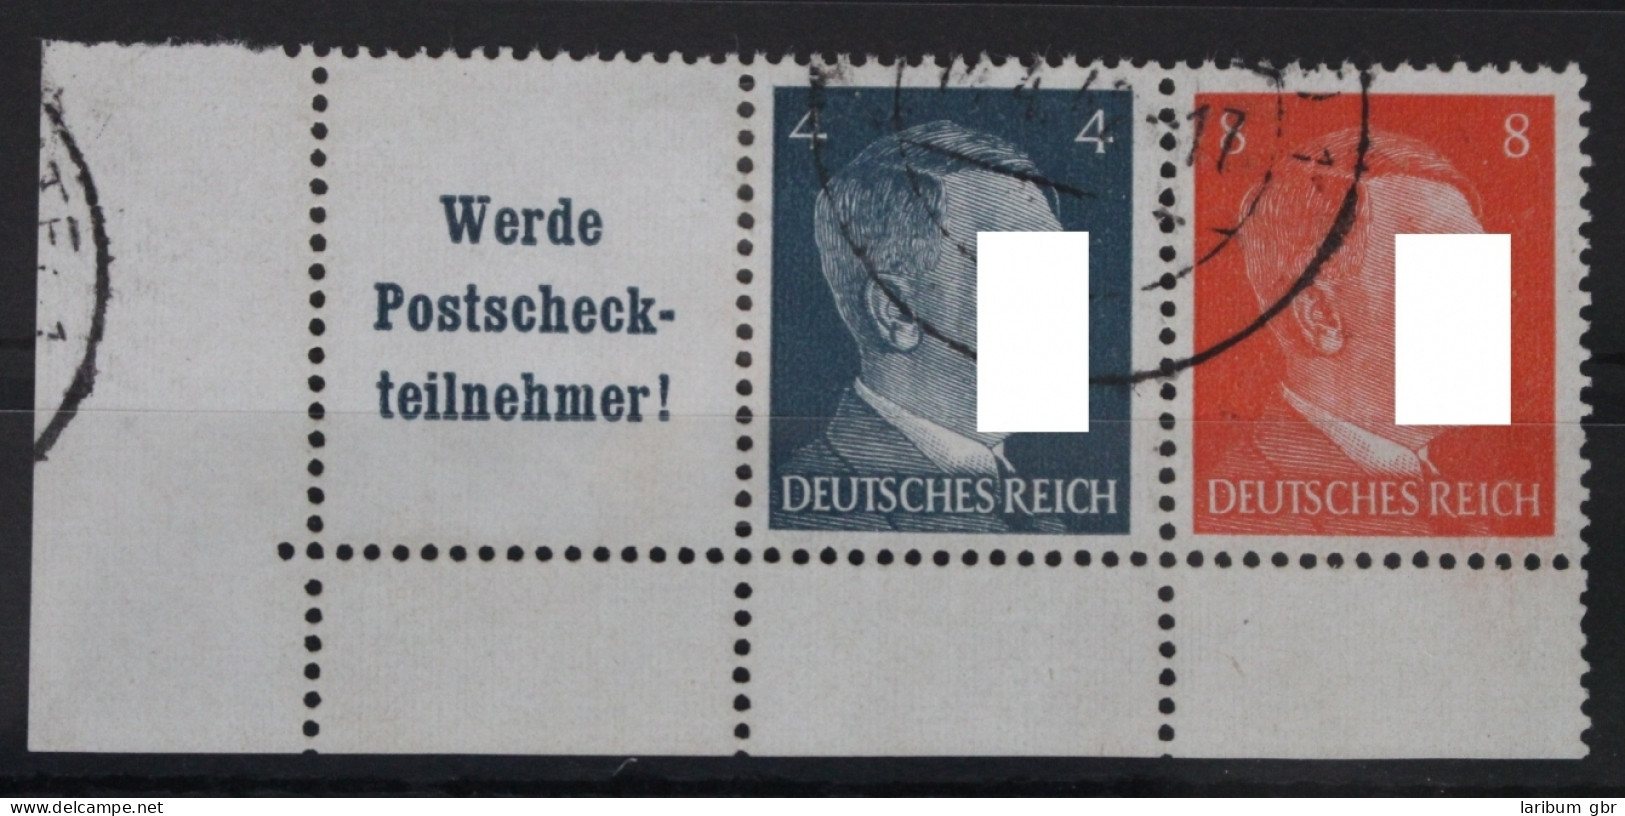 Deutsches Reich Zd W153 Gestempelt Zusammendruck Ungefaltet #VG640 - Se-Tenant